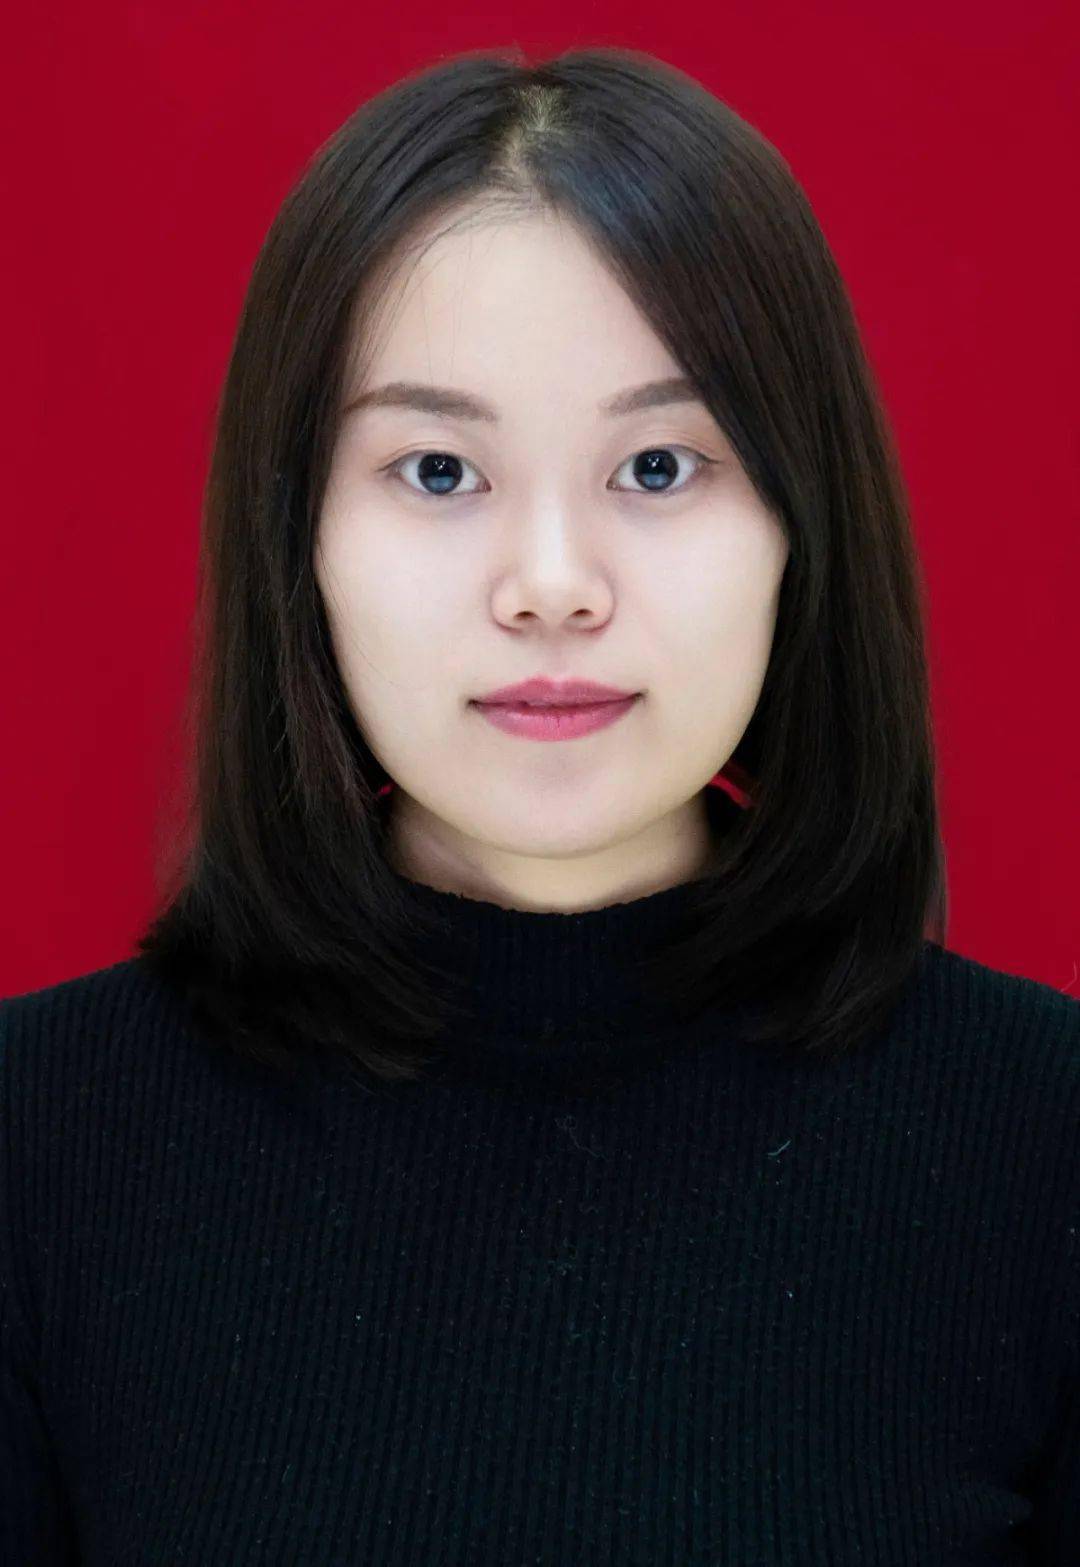 贺嘉欣,女,汉族,1995年10月生,中共党员,2021年毕业于山西农业大学